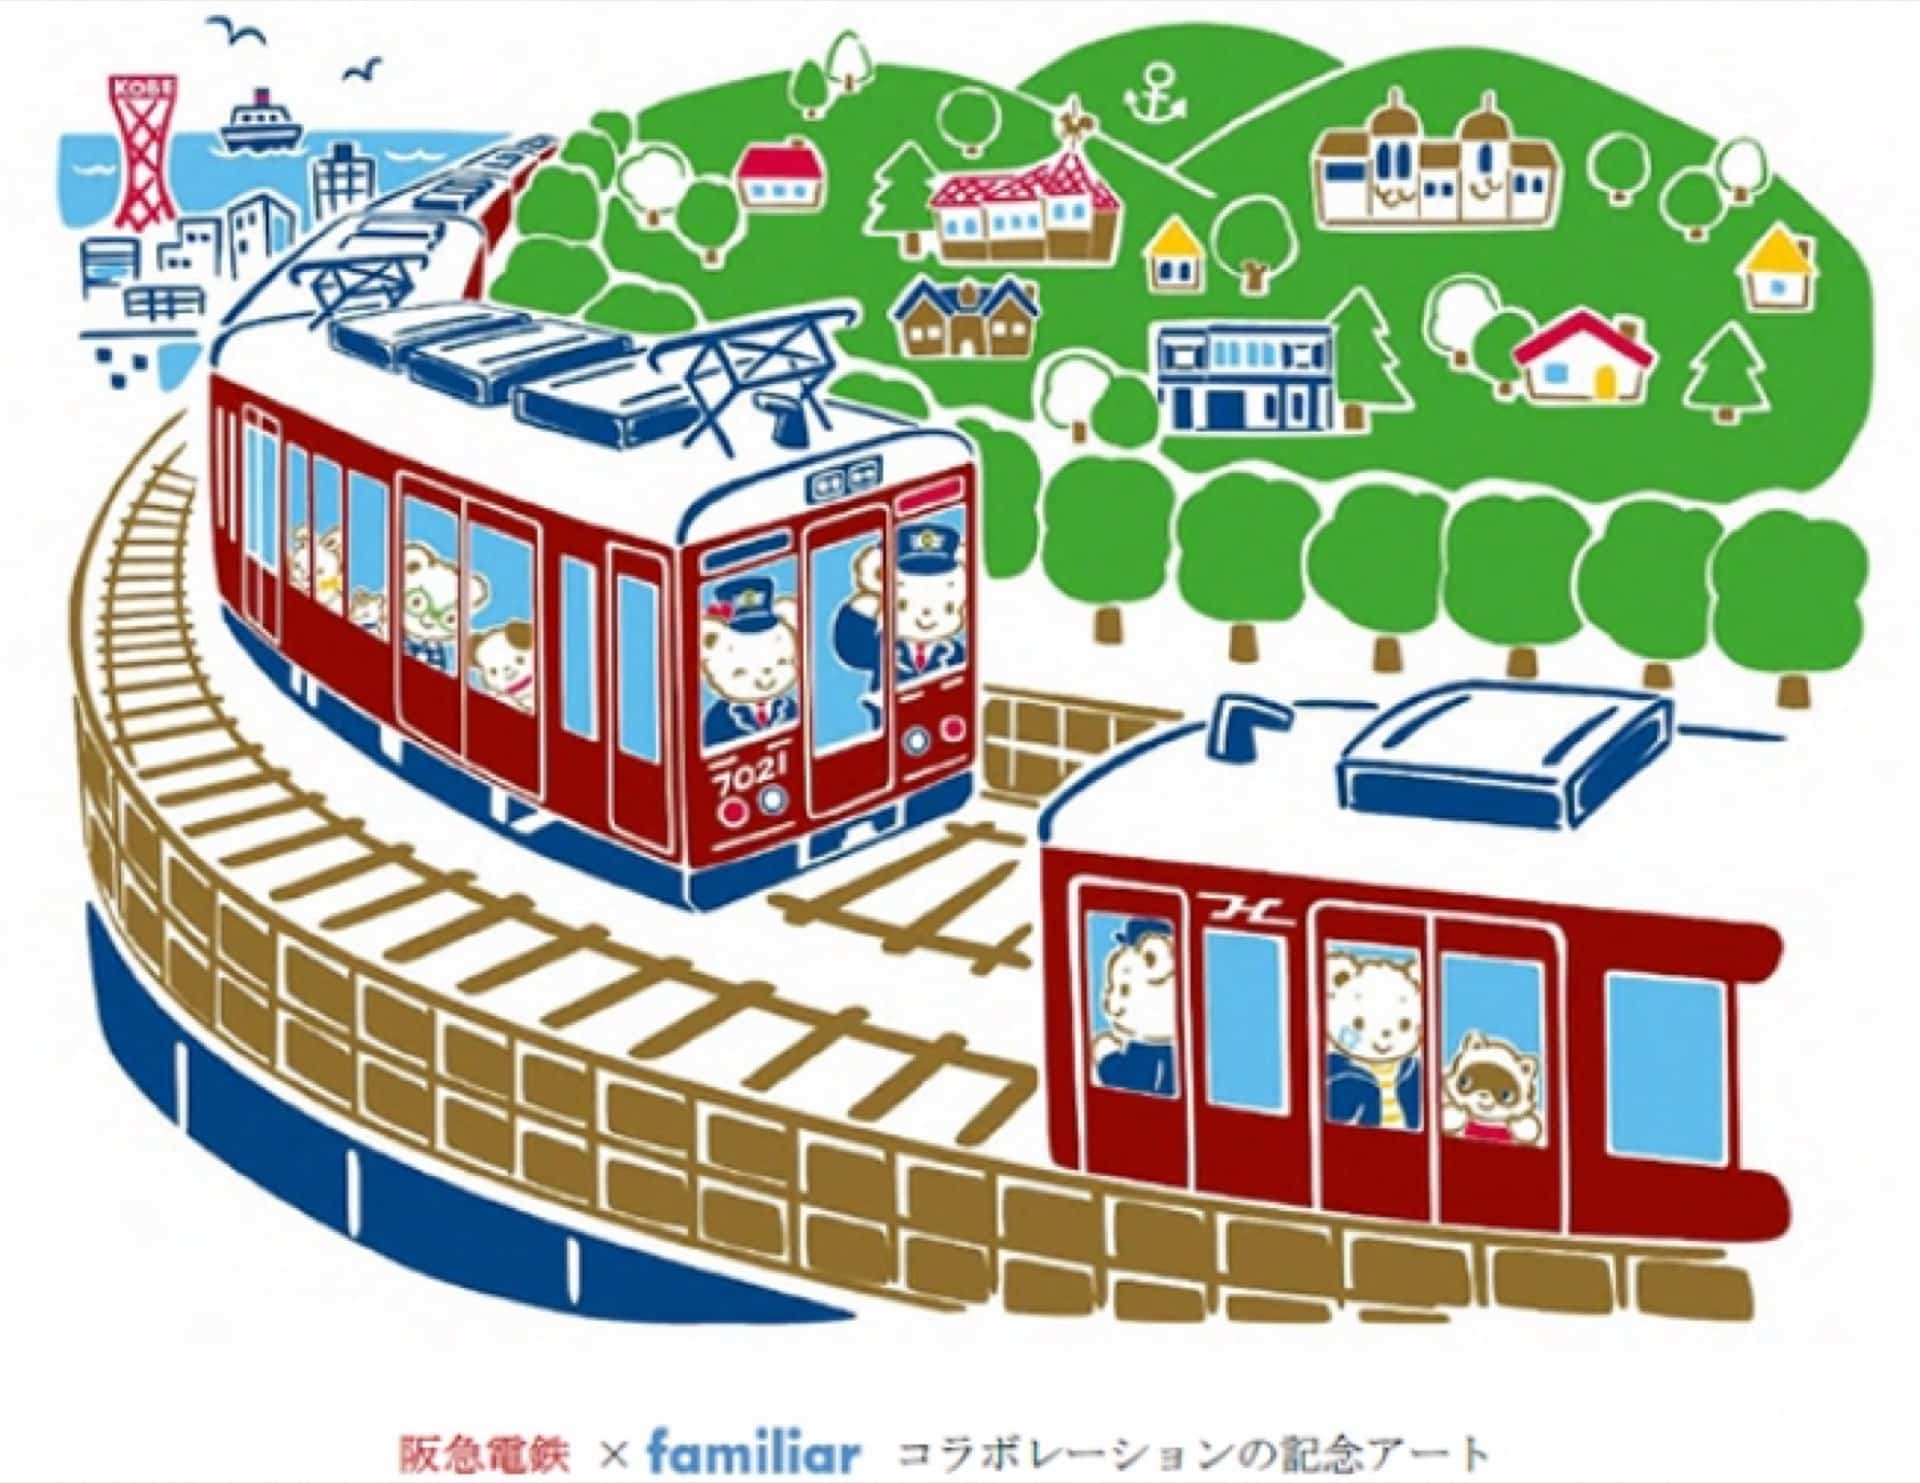 阪急電車 ファミリアのコラボグッズ発売 阪急神戸線開通100周年記念